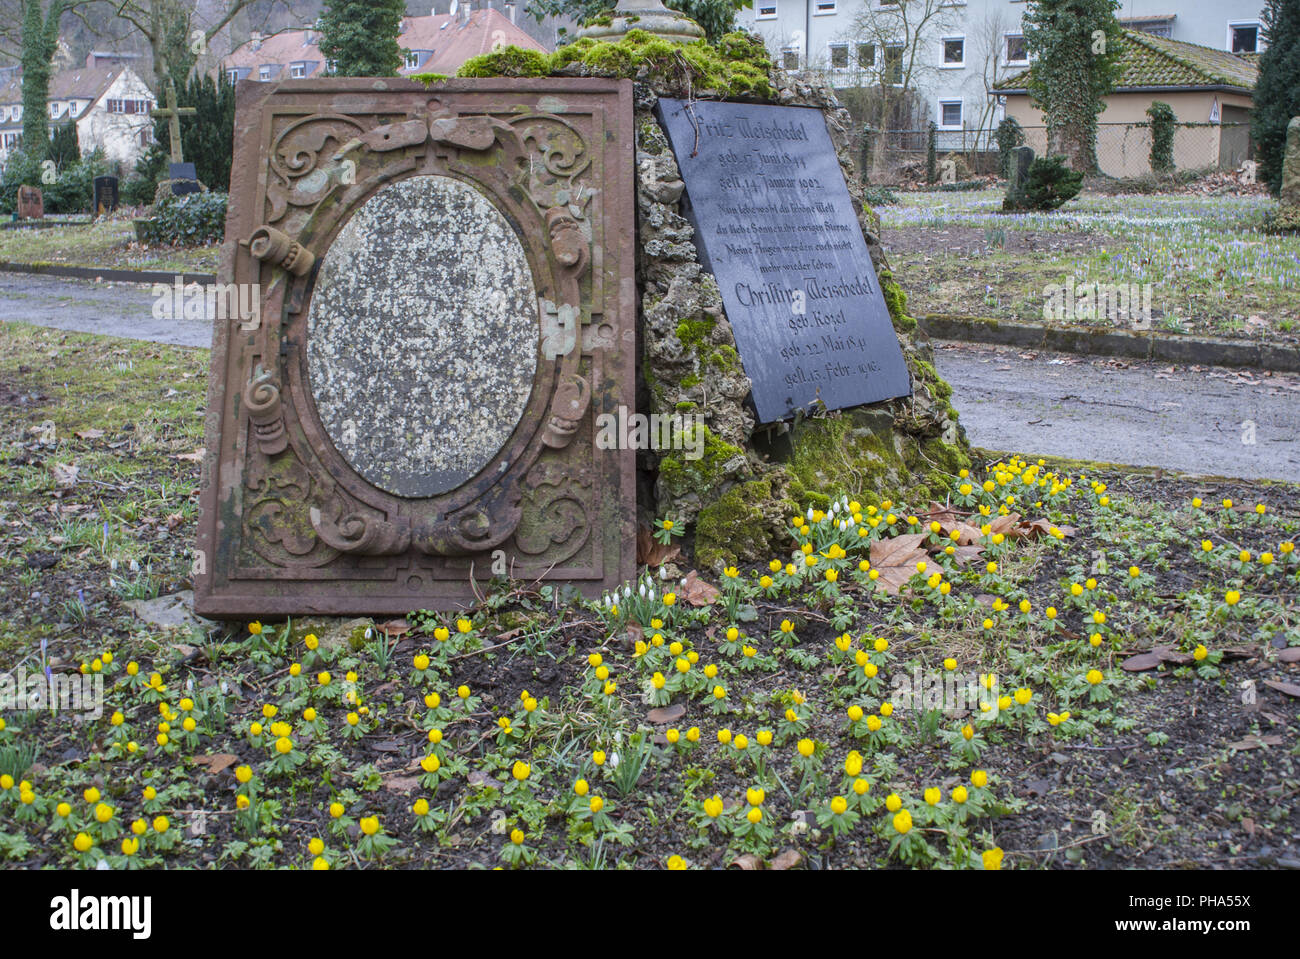 Tumba de la losa, Nikolai cementerio, Schwaebisch Hall, Alemania Foto de stock